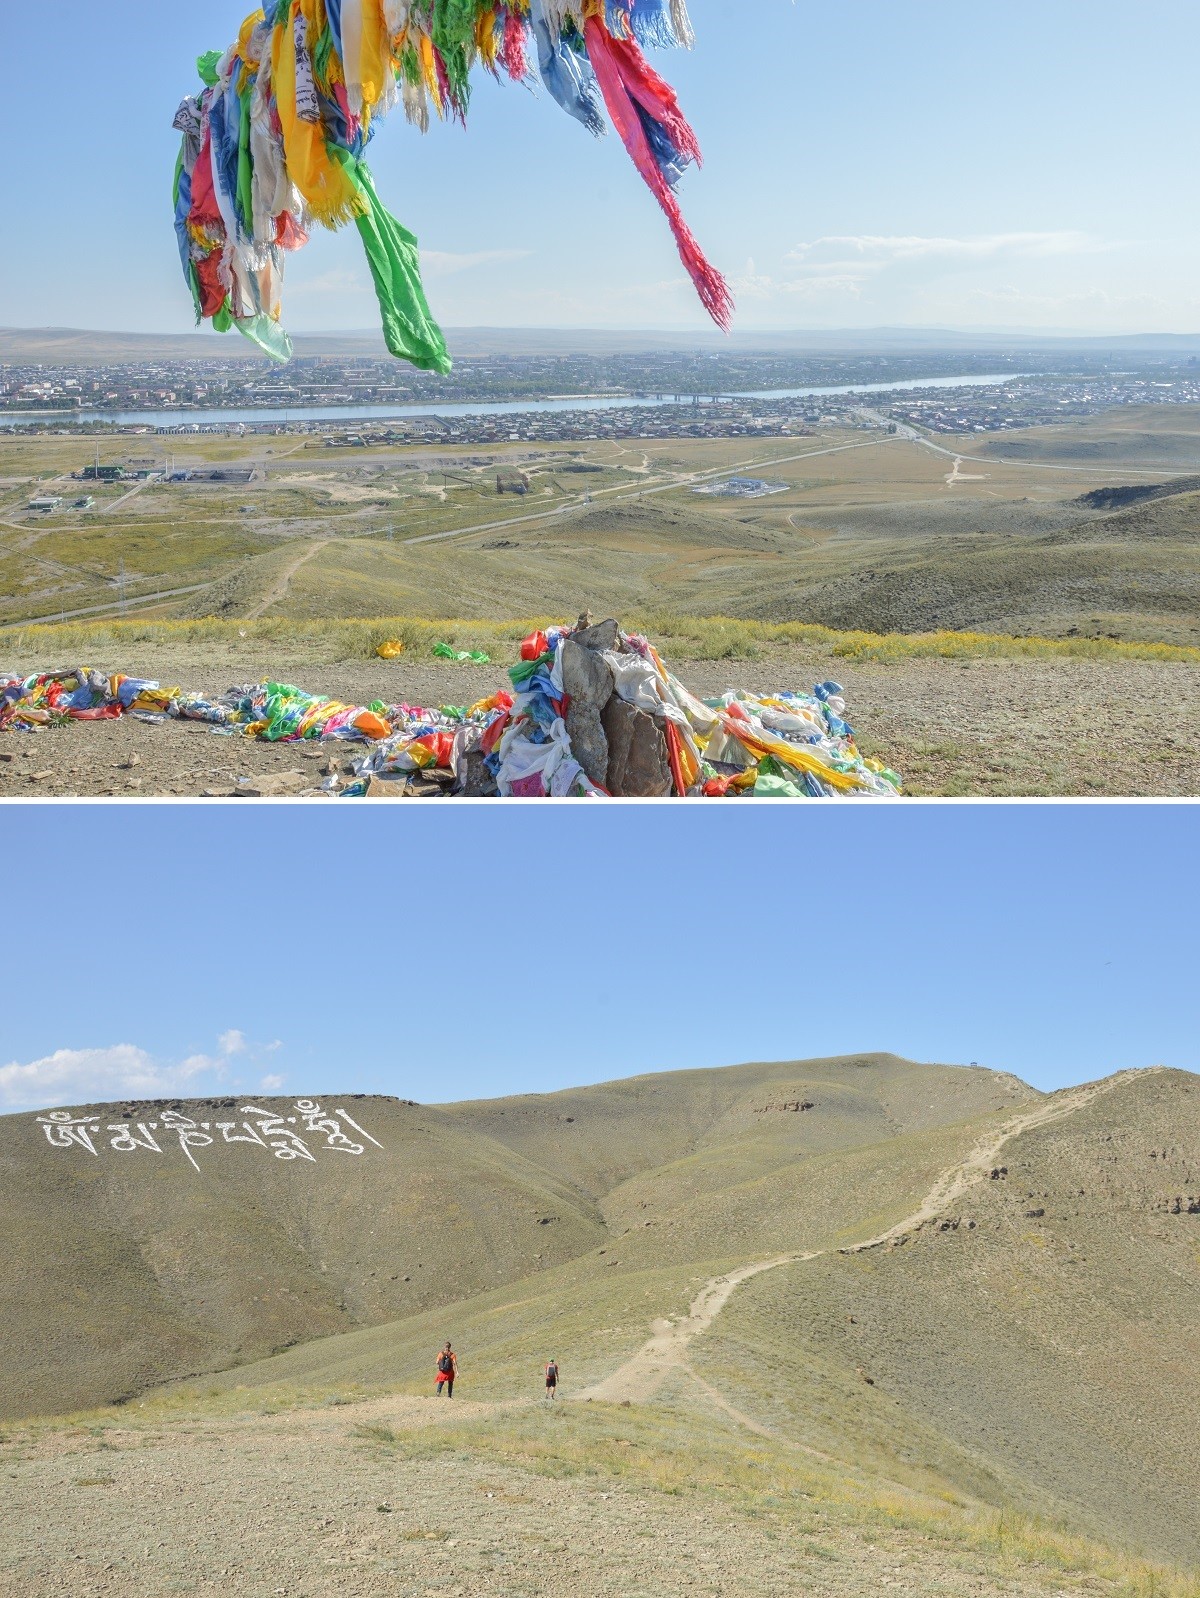 Après avoir entrepris, par une chaleur étouffante, l’ascension du mont sacré Doguèè, s’offre à moi un spectacle inoubliable : Kyzyl s’étendant telle une oasis, tandis que dans mon dos, à flanc de montagne, figure le plus grand mantra bouddhiste au monde.